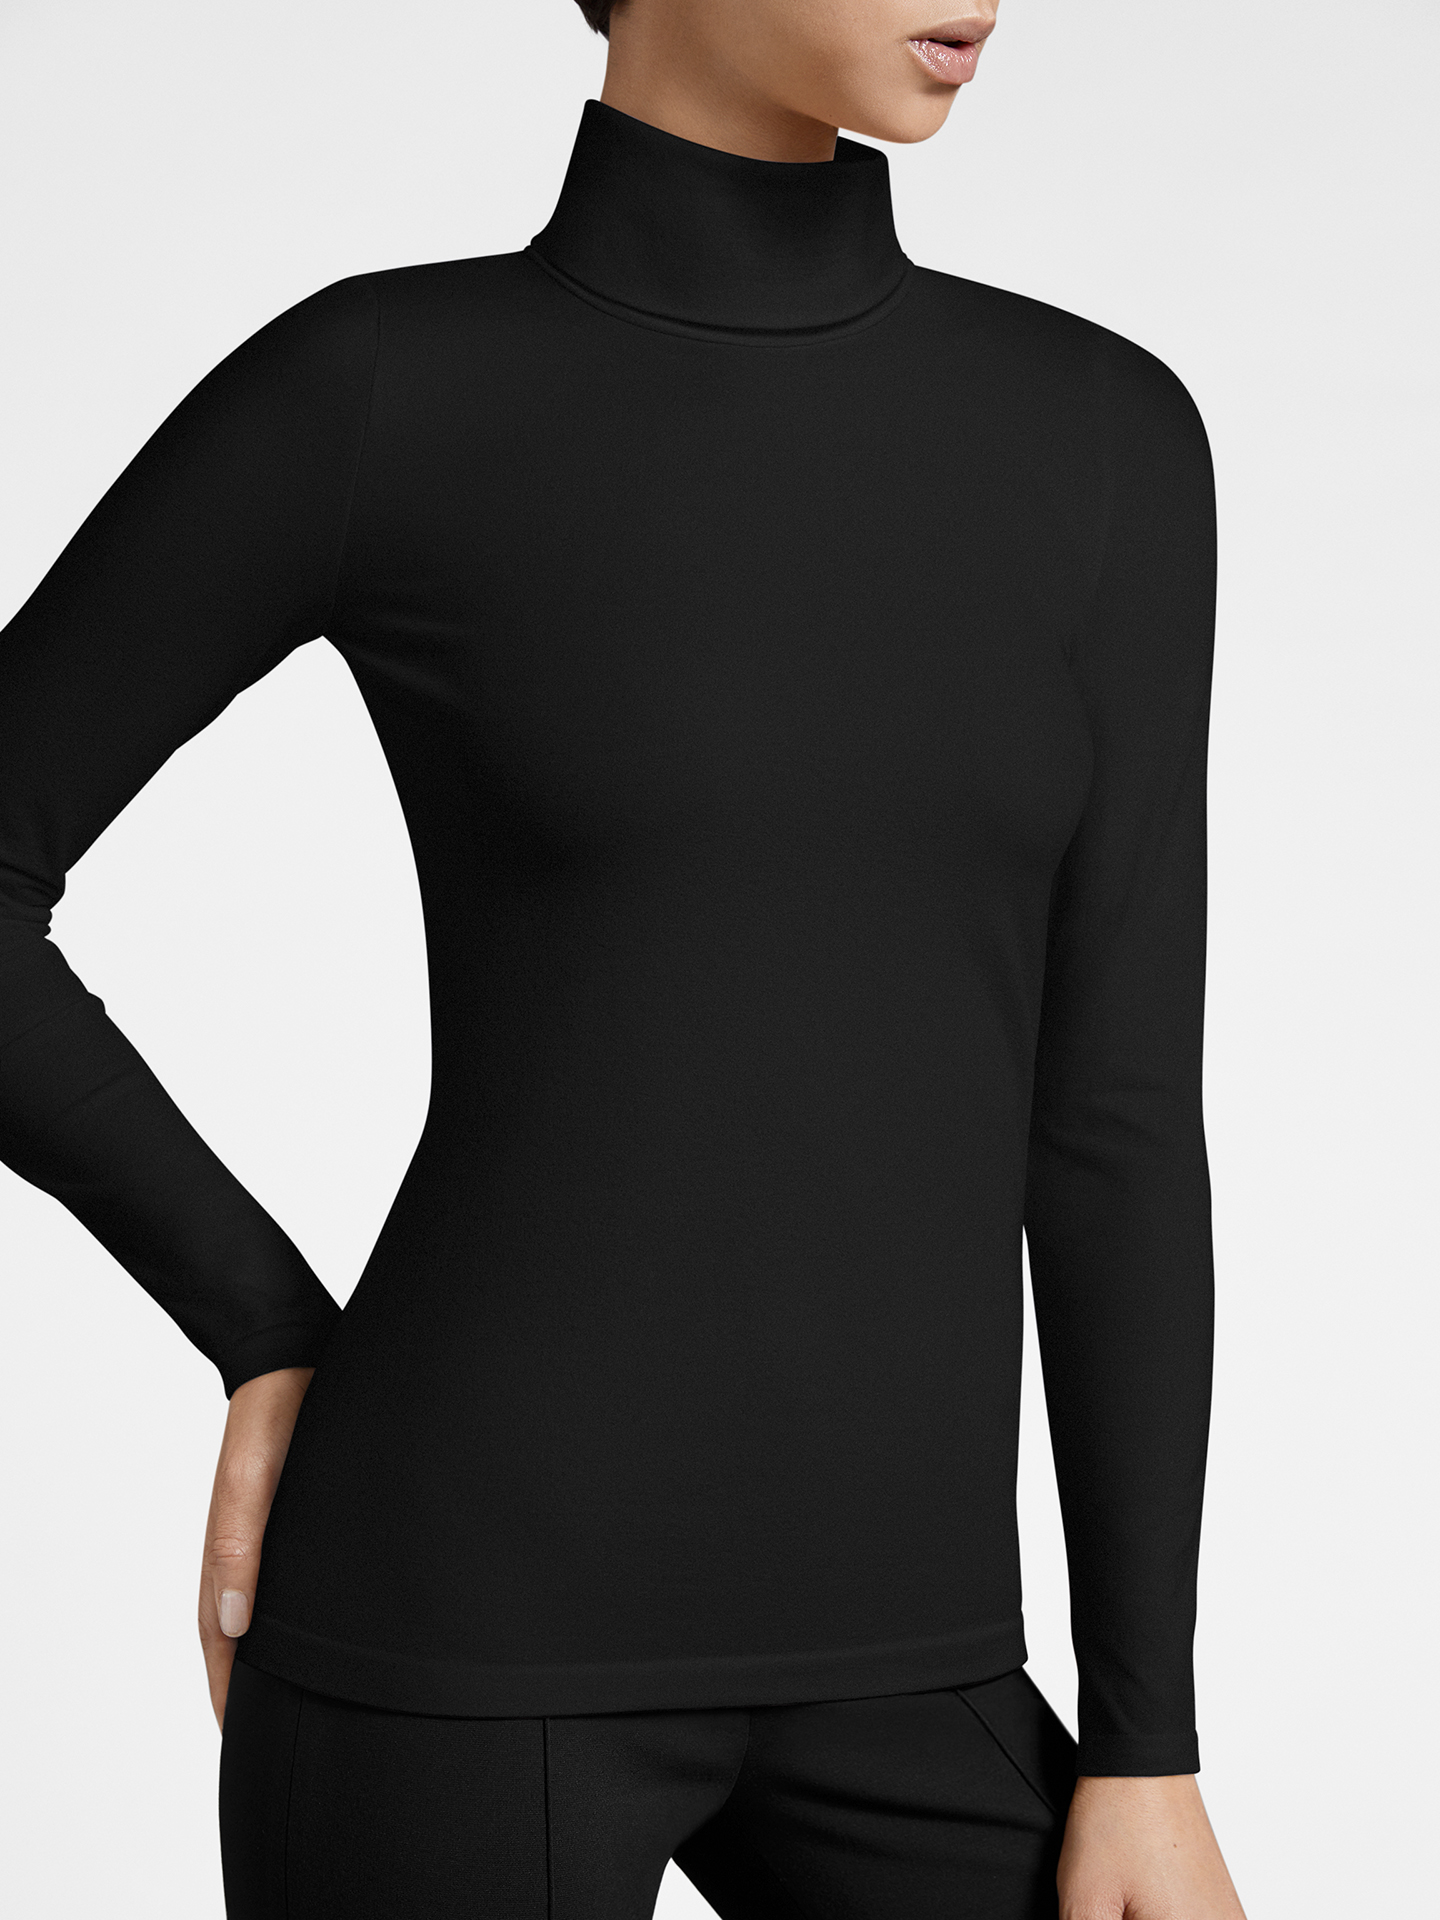 Wolford - Turtleneck Top Long Sleeves, Frau, black, Größe: XS von Wolford